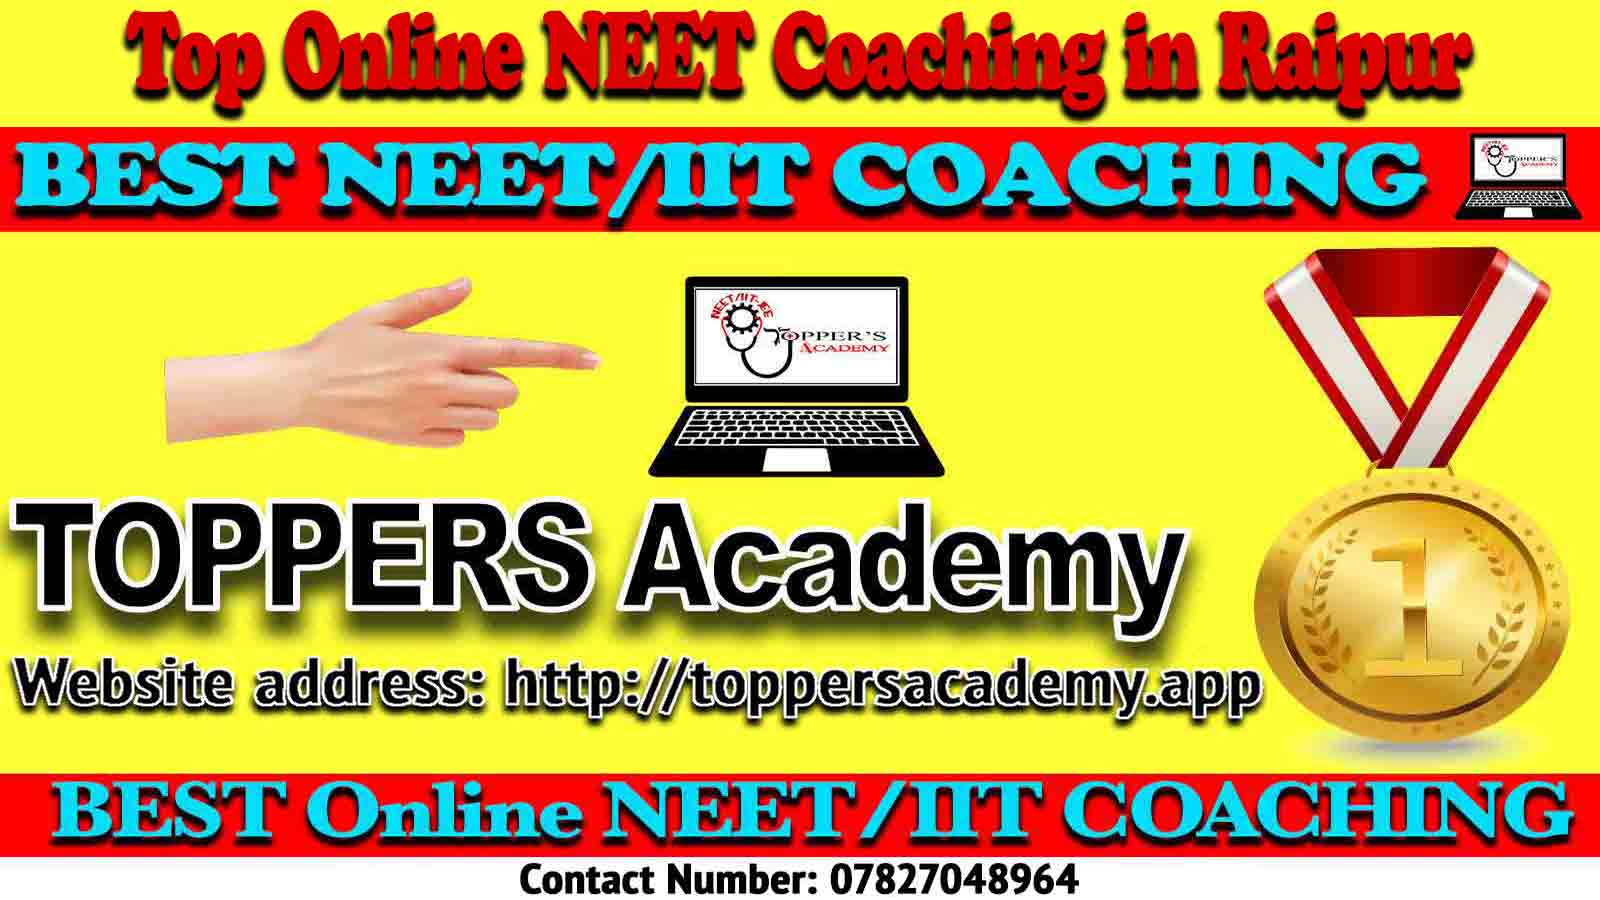 Best Online NEET Coaching in Raipur